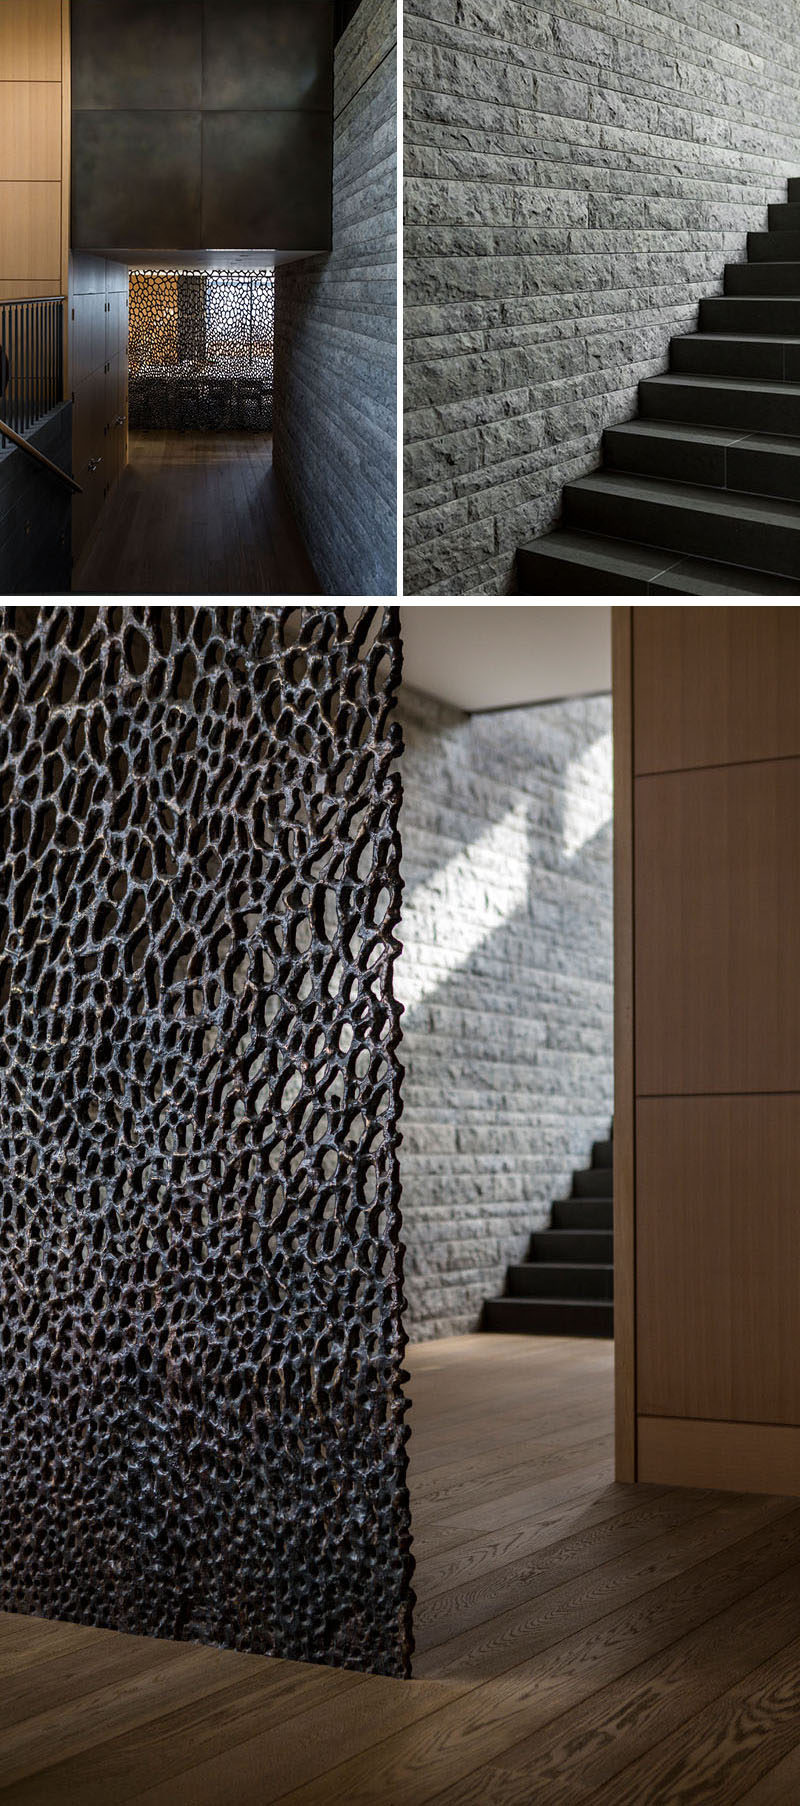 В этом современном доме каменная стена идет вдоль лестницы, а в нижней части лестницы есть декоративная ширма, скрывающая столовую. #SonteWall # Лестница # Декоративный экран